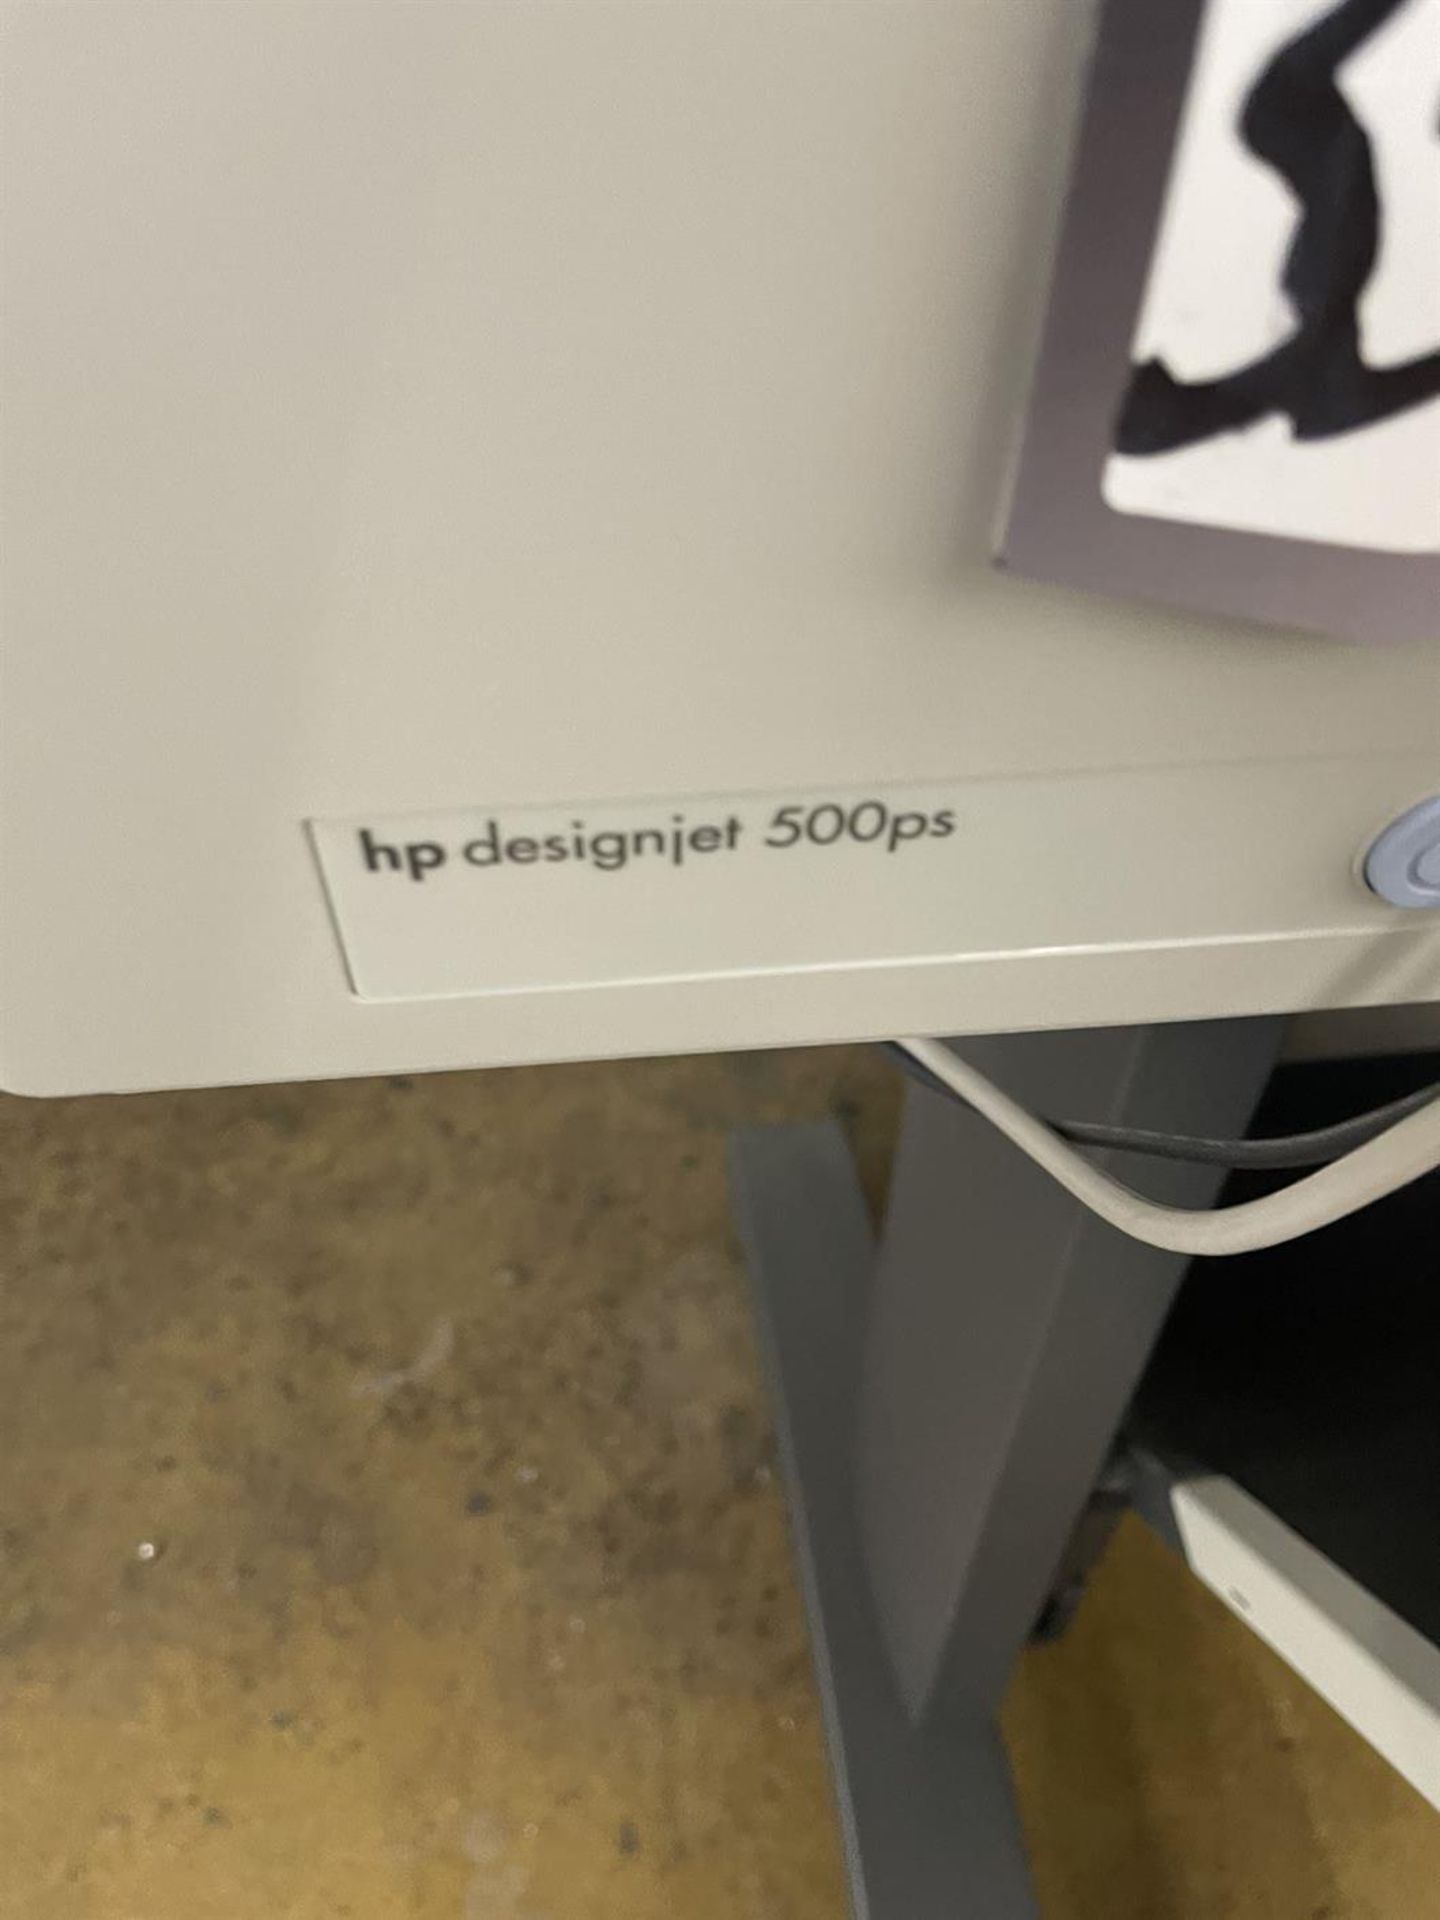 HP DesignJet 500ps Large Format Printer, s/n SG3CF66108B - Image 2 of 3